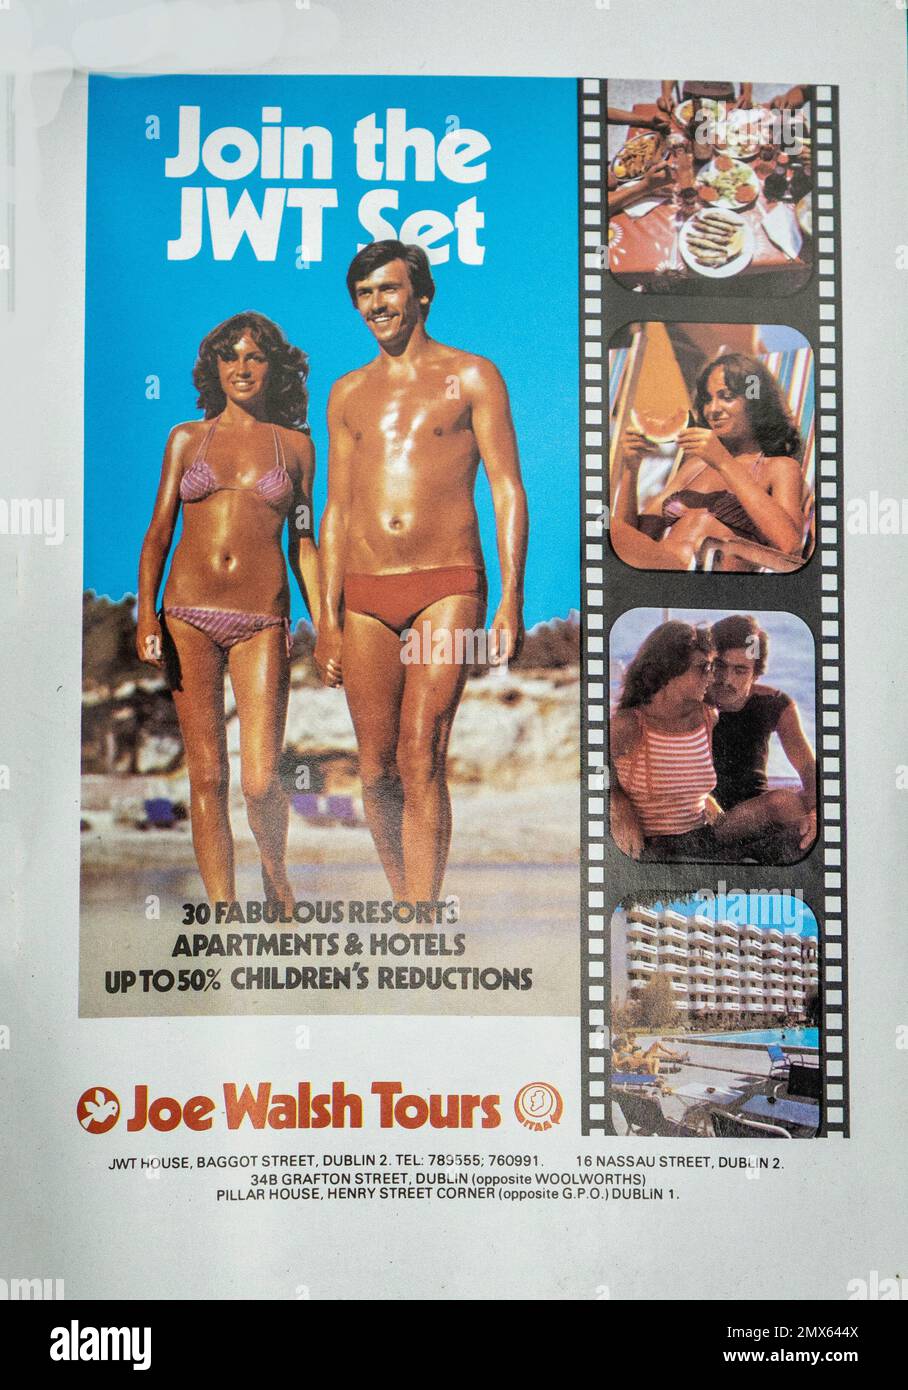 Eine 1979-Werbeanzeige für Joe Walsh Tours in Dublin, Irland, ein damals beliebtes Reisebüro für den Sonnenurlaub. Das ursprüngliche Unternehmen wurde 2021 geschlossen. In der Werbung werden die vier Standorte im Stadtzentrum erwähnt. Ein gleichnamiges Unternehmen ist jetzt auf Pilgerreisen spezialisiert. Stockfoto